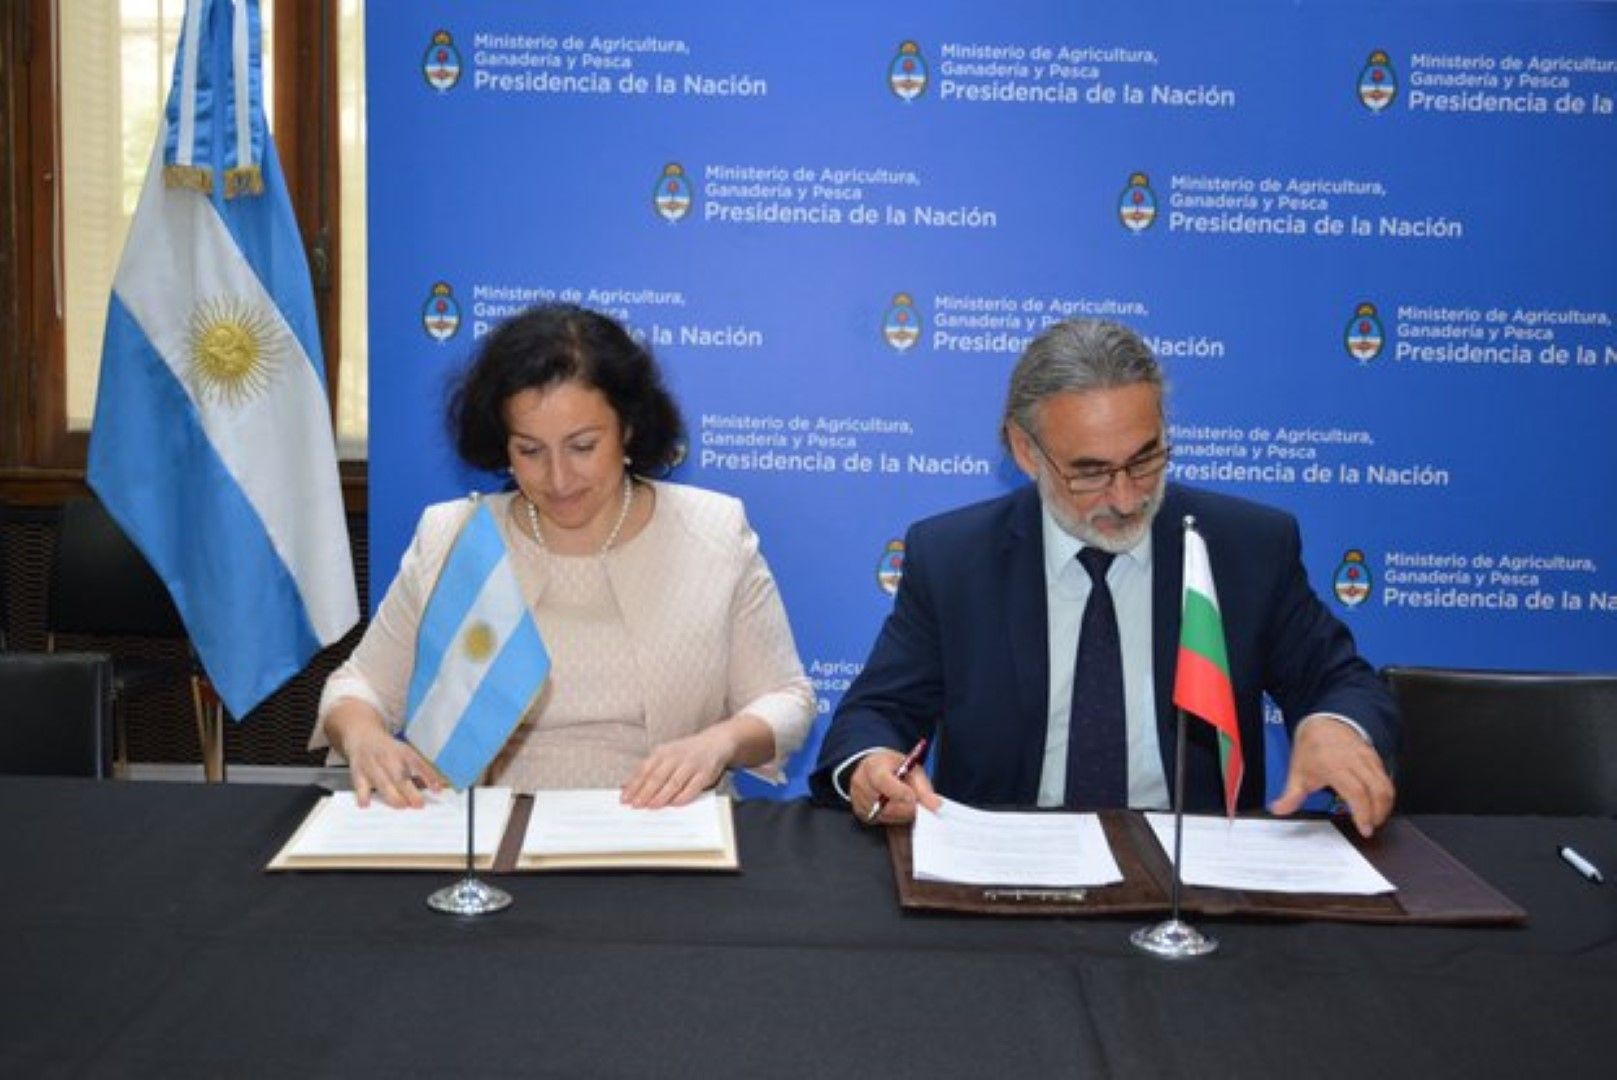 Министрите Десислава Танева и Луис Бастерра подписват декларация за сътрудничество в областта на земеделието